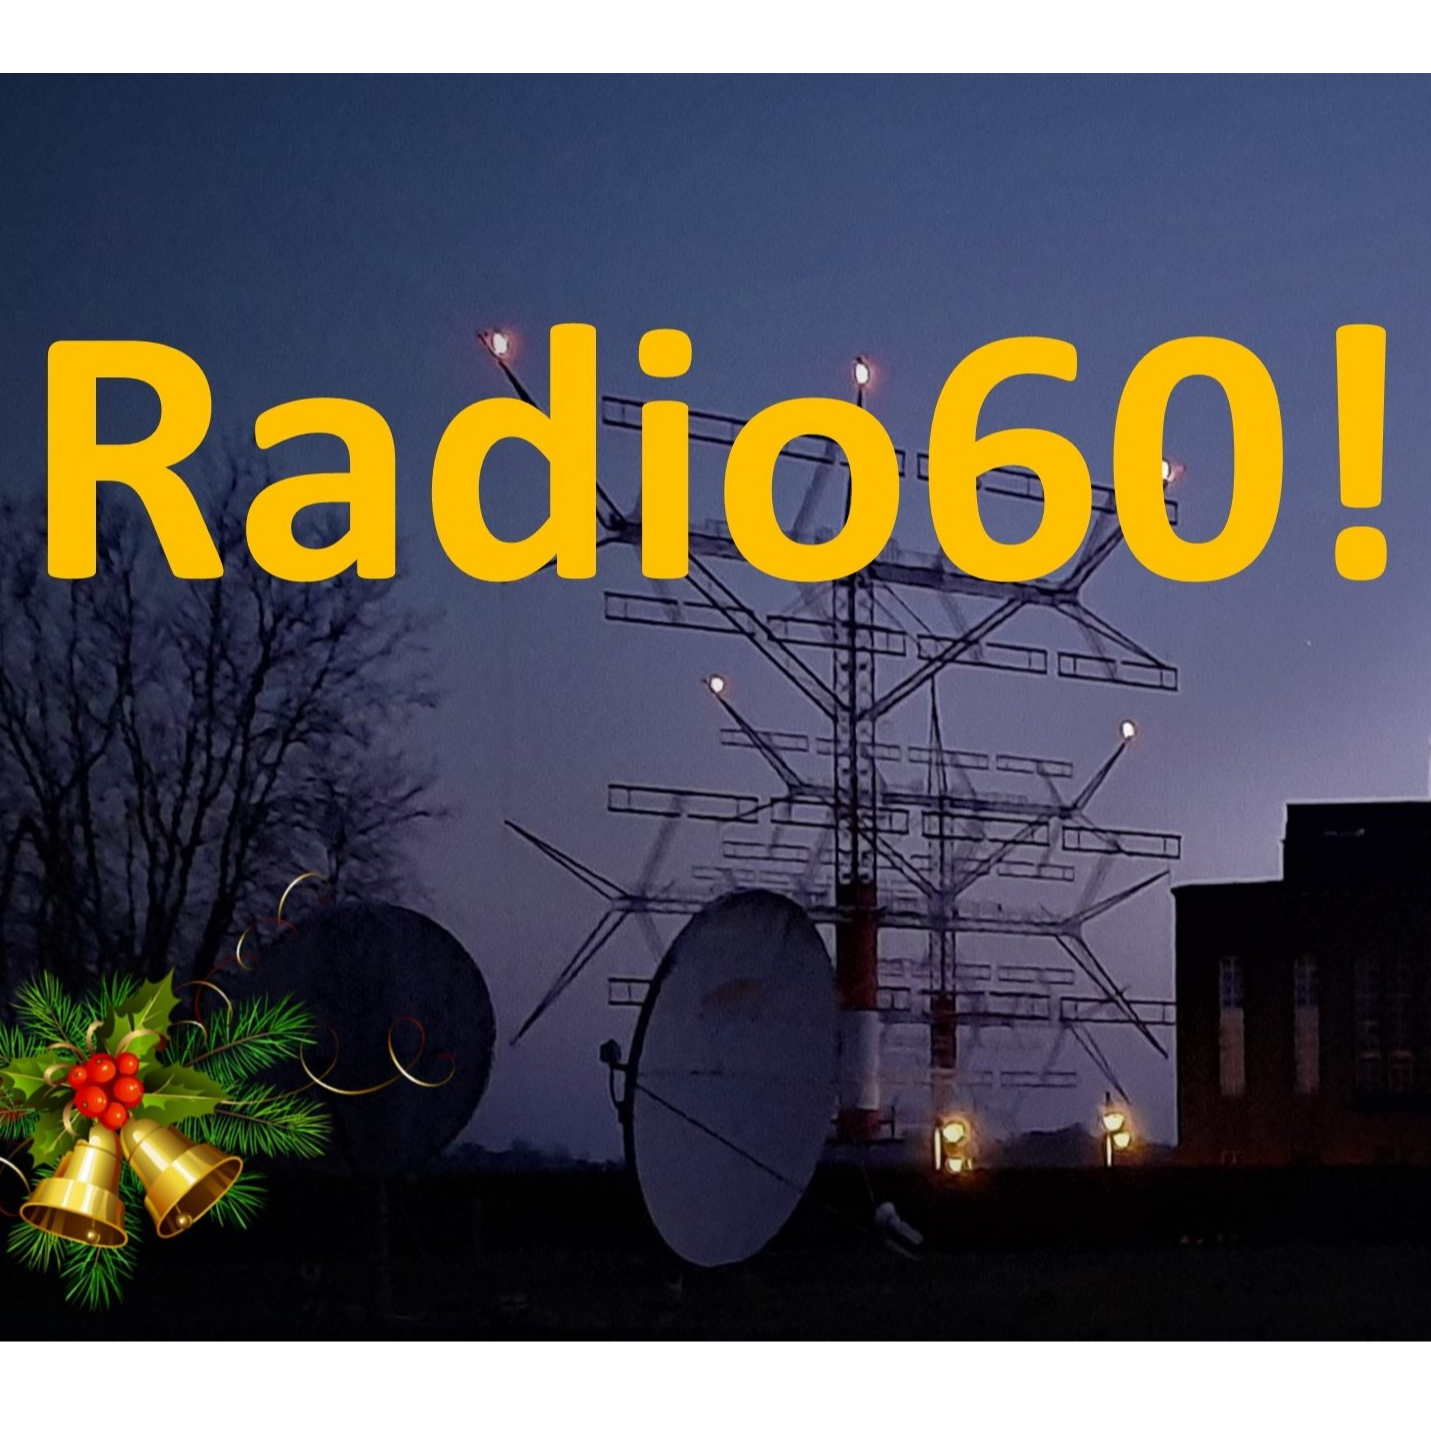 Radio60!